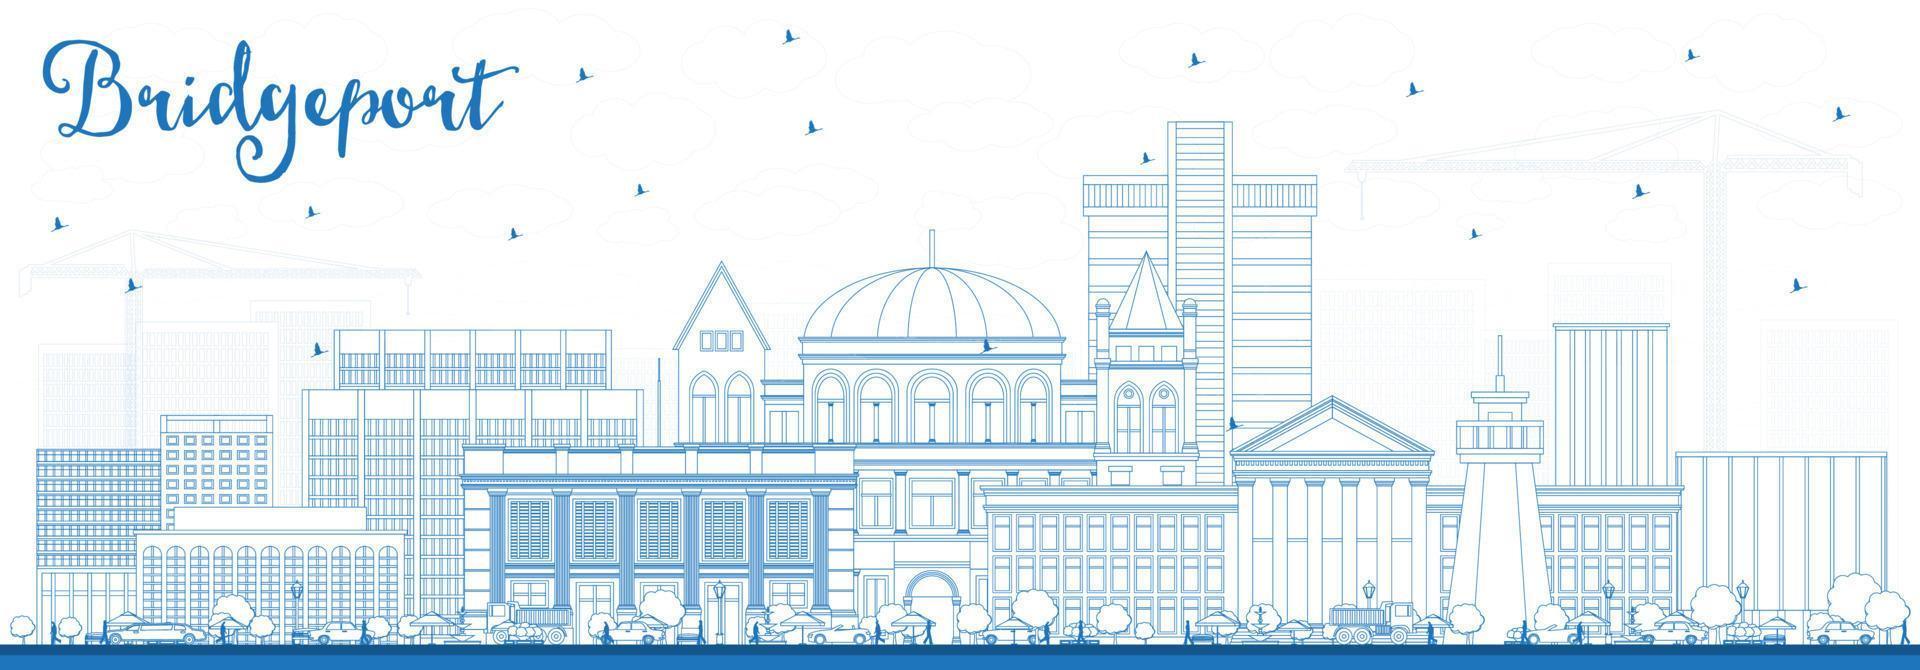 delinear el horizonte de la ciudad de bridgeport connecticut con edificios azules. vector